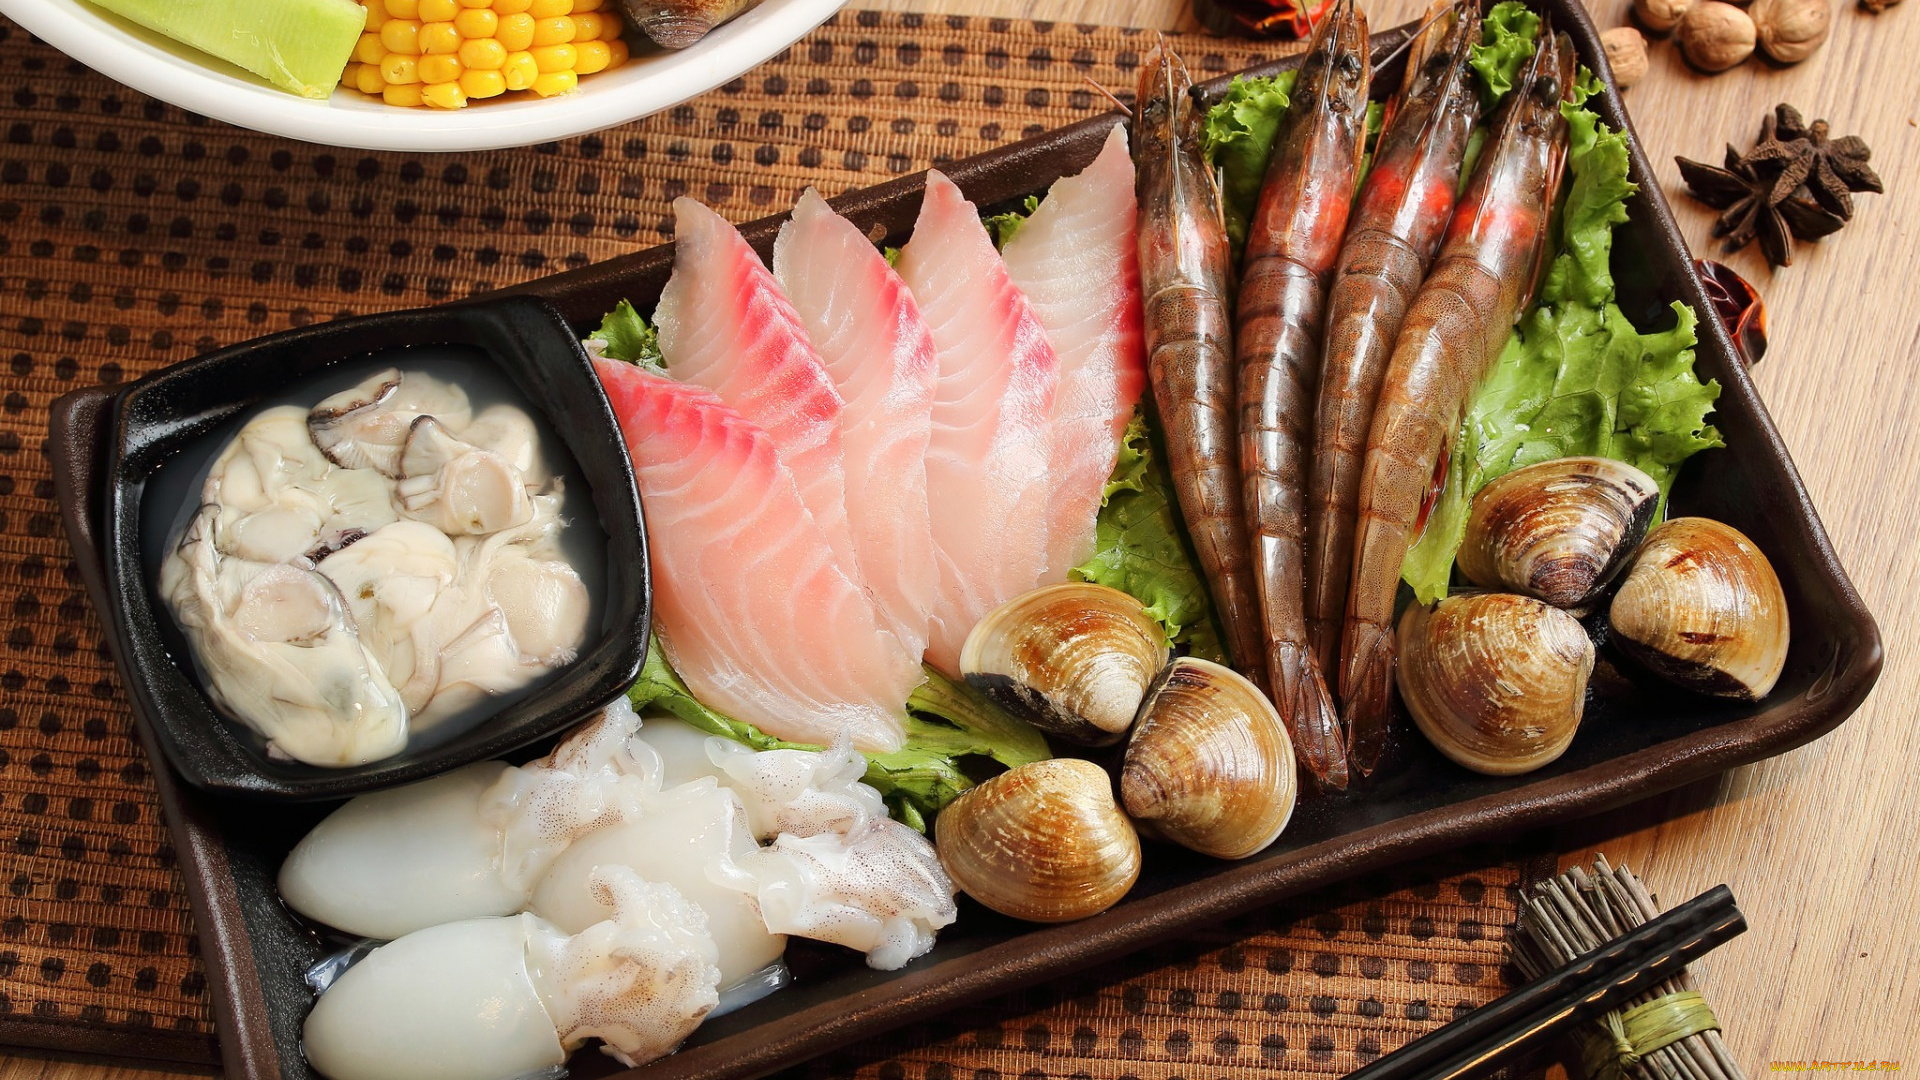 еда, рыба, , морепродукты, , суши, , роллы, моллюски, мускатный, орех, бадьян, кальмары, креветки, ассорти, морепродукты, блюда, японская, кухня